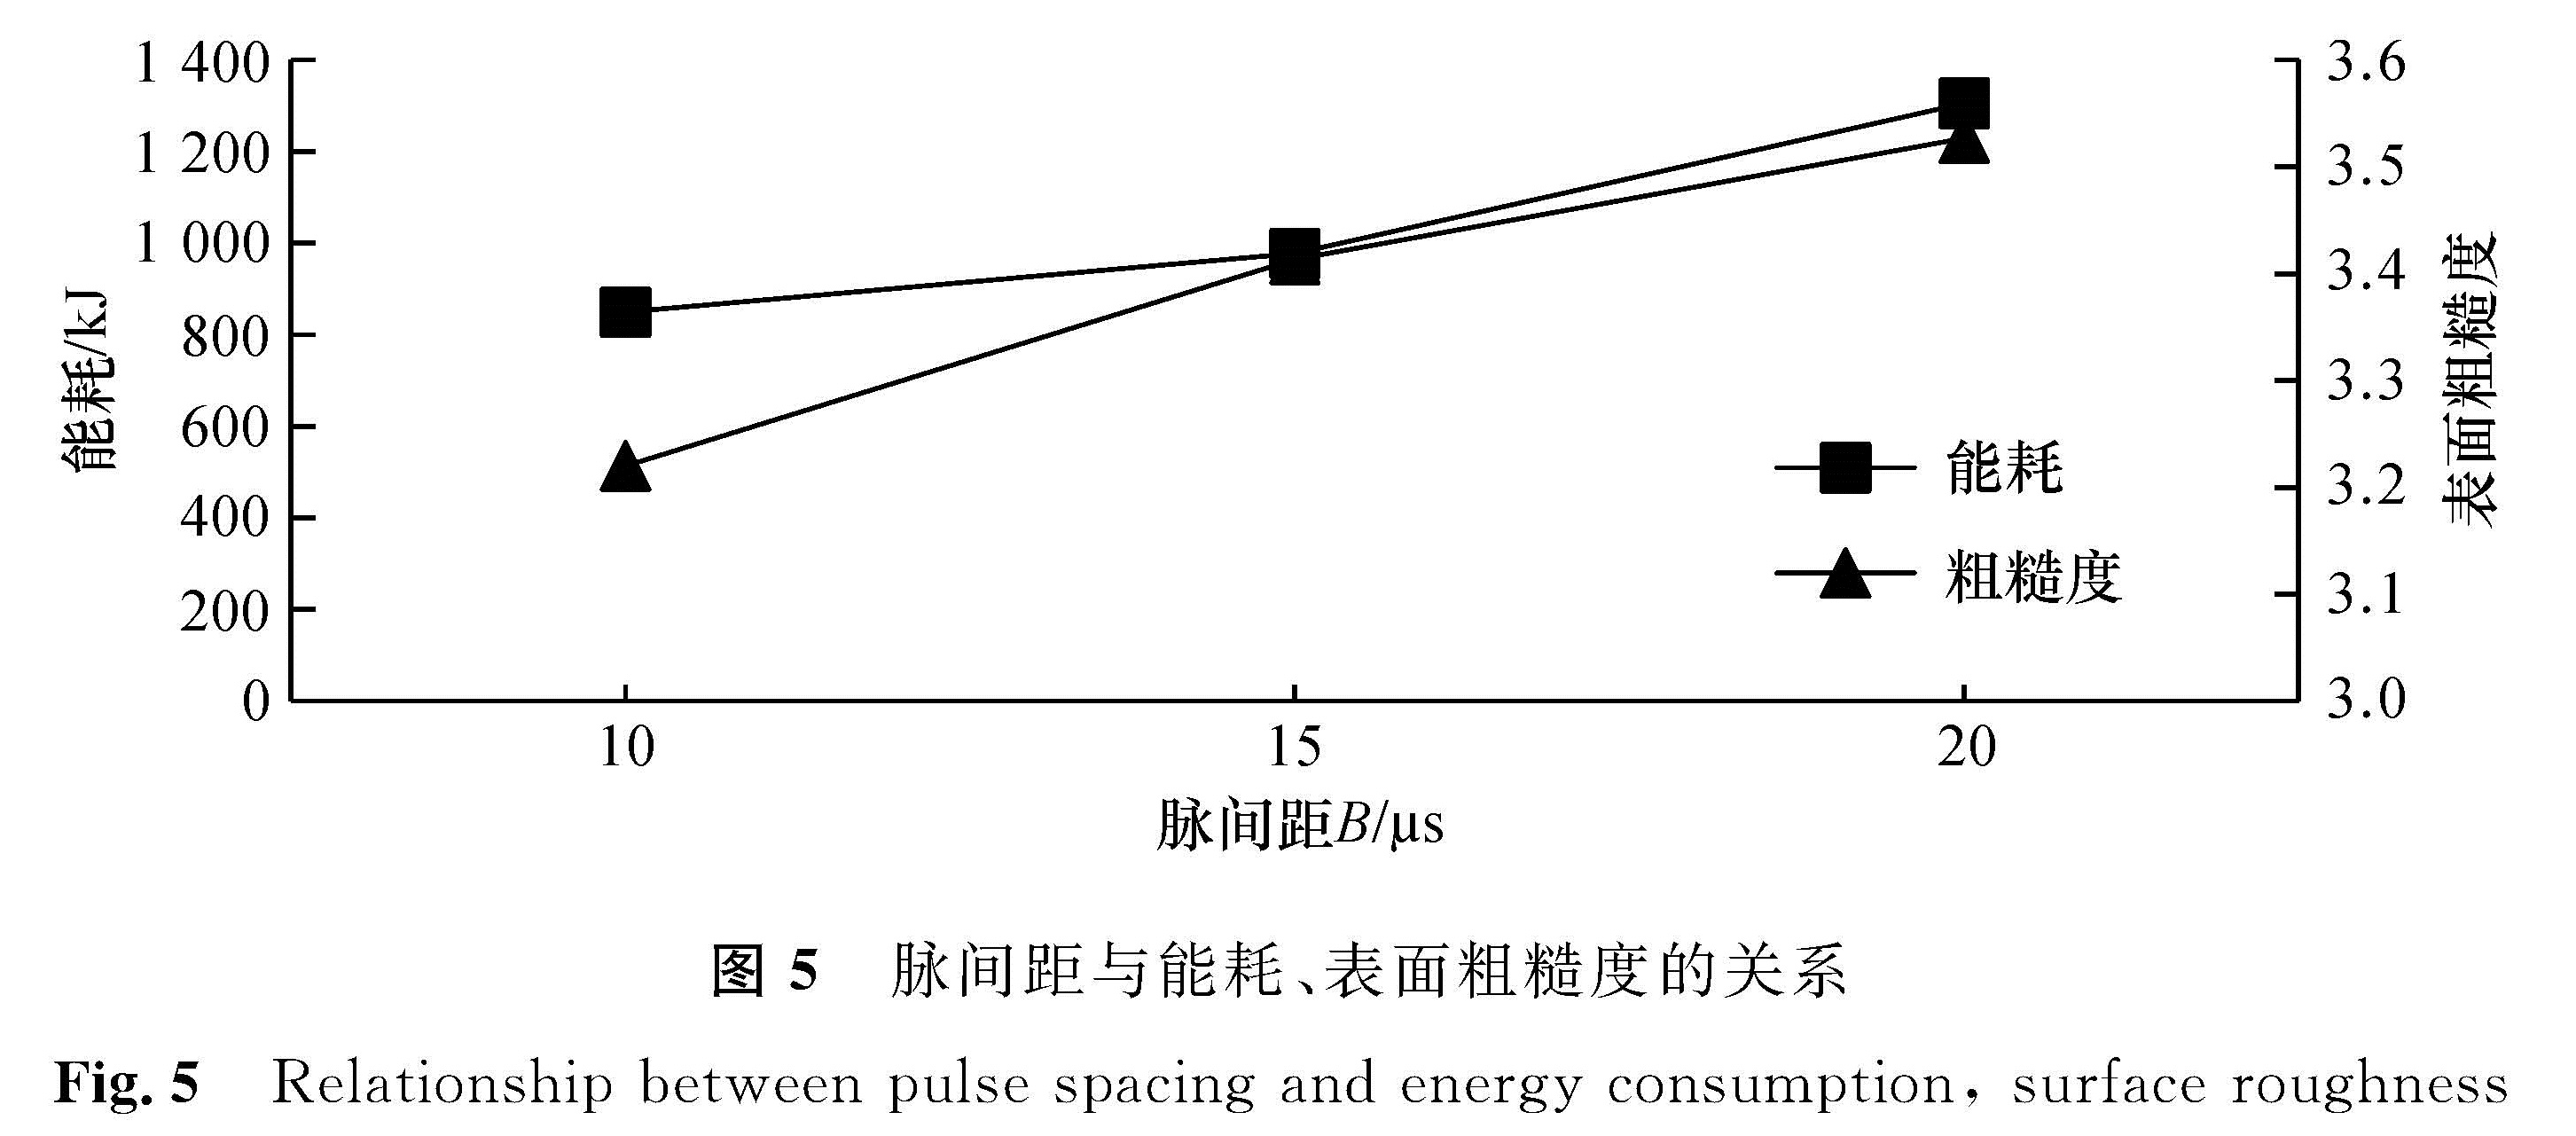 图5 脉间距与能耗、表面粗糙度的关系<br/>Fig.5 Relationship between pulse spacing and energy consumption, surface roughness